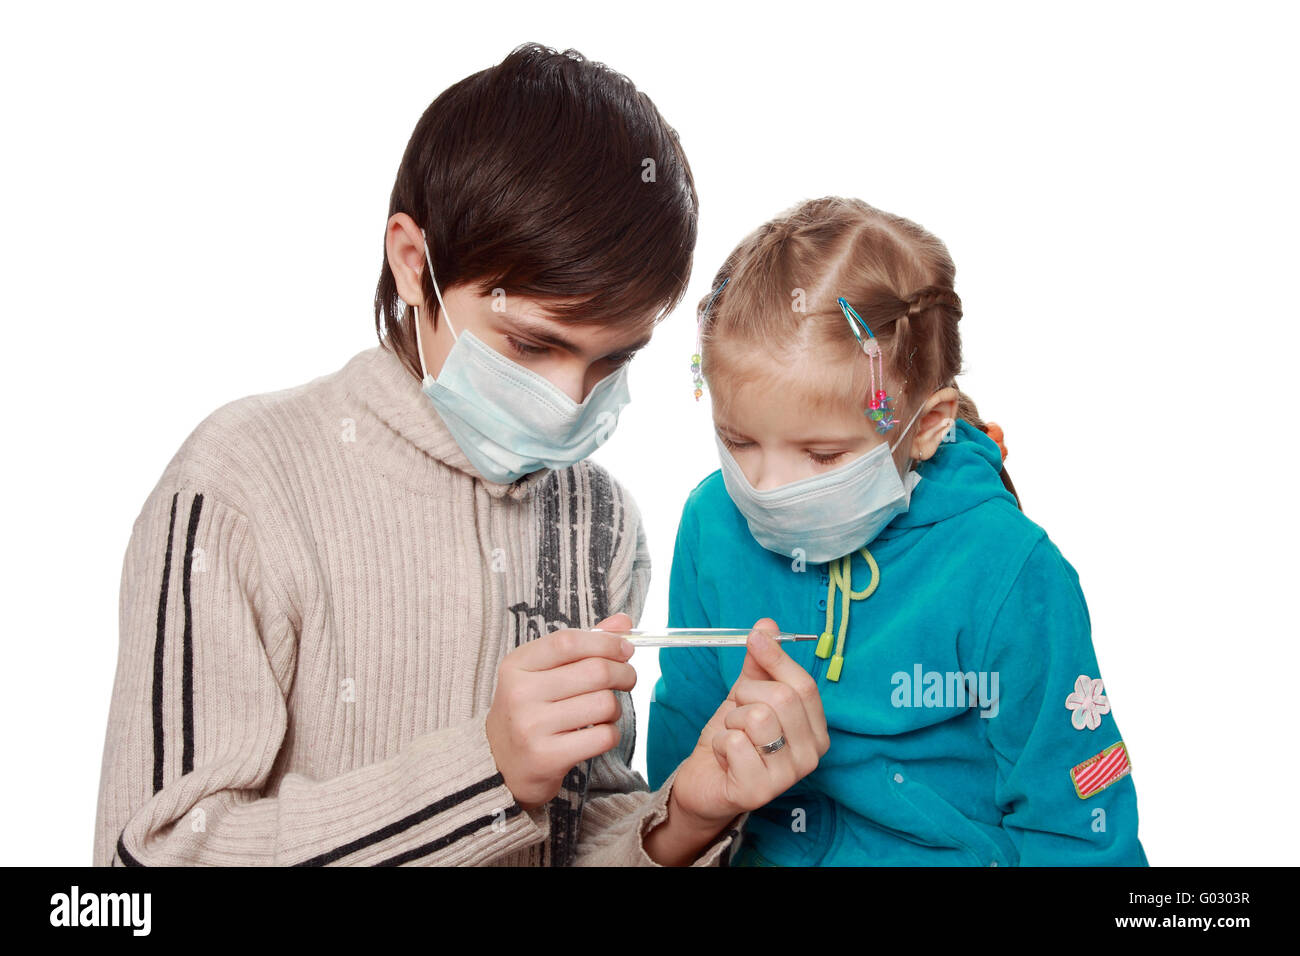 Les enfants malades dans les respirateurs thermometre medical Banque D'Images